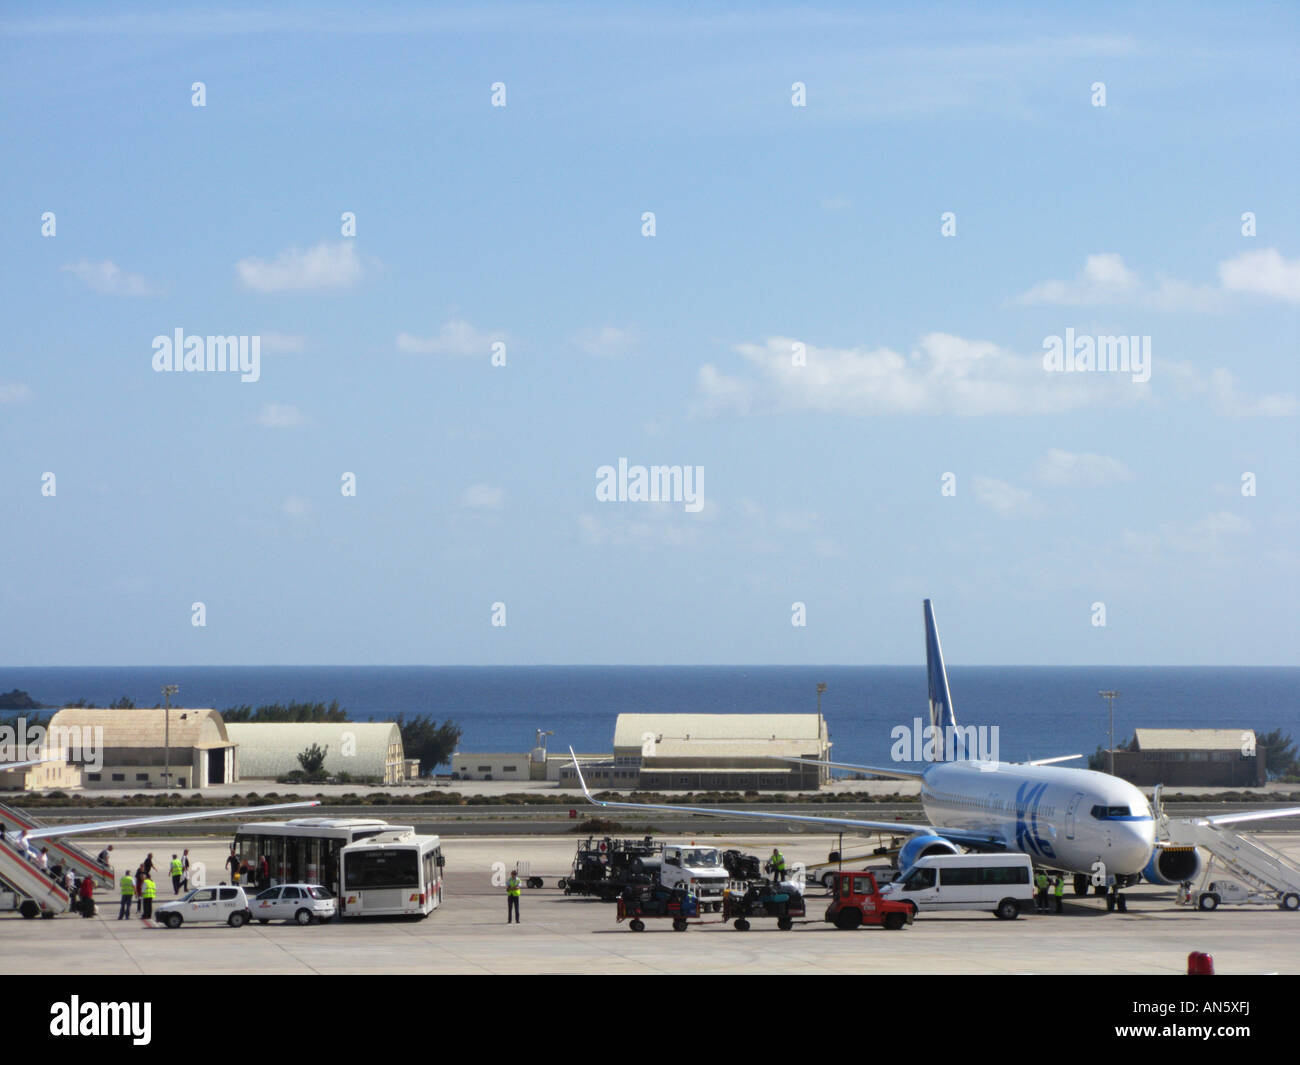 El aeropuerto de Gran Canaria, Las Palmas Fotografía de stock - Alamy